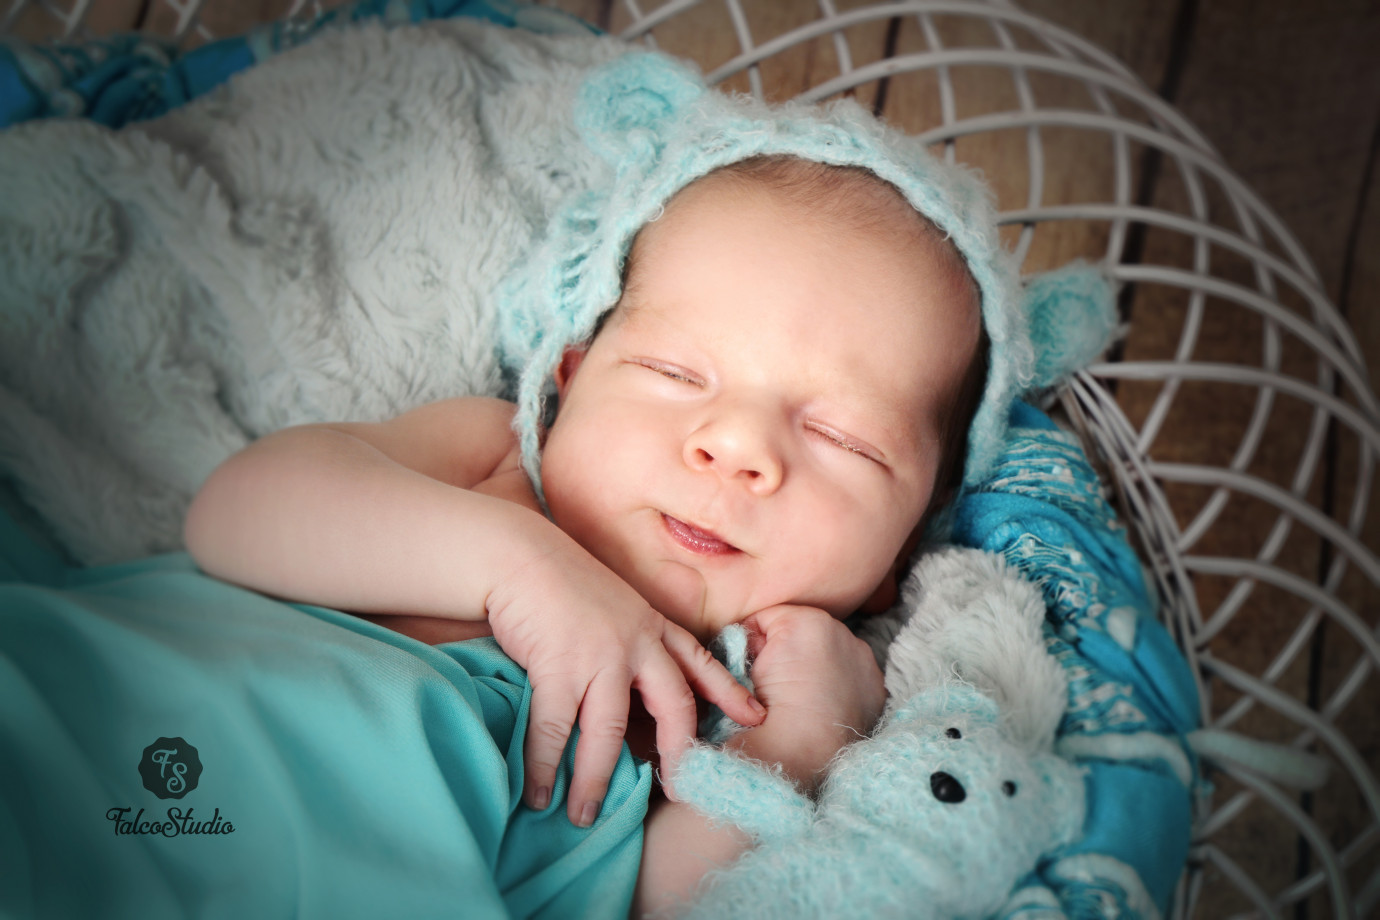 zdjęcia laziska-gorne fotograf falco-studio-dorota-jastrzebska portfolio zdjecia noworodkow sesje noworodkowe niemowlę